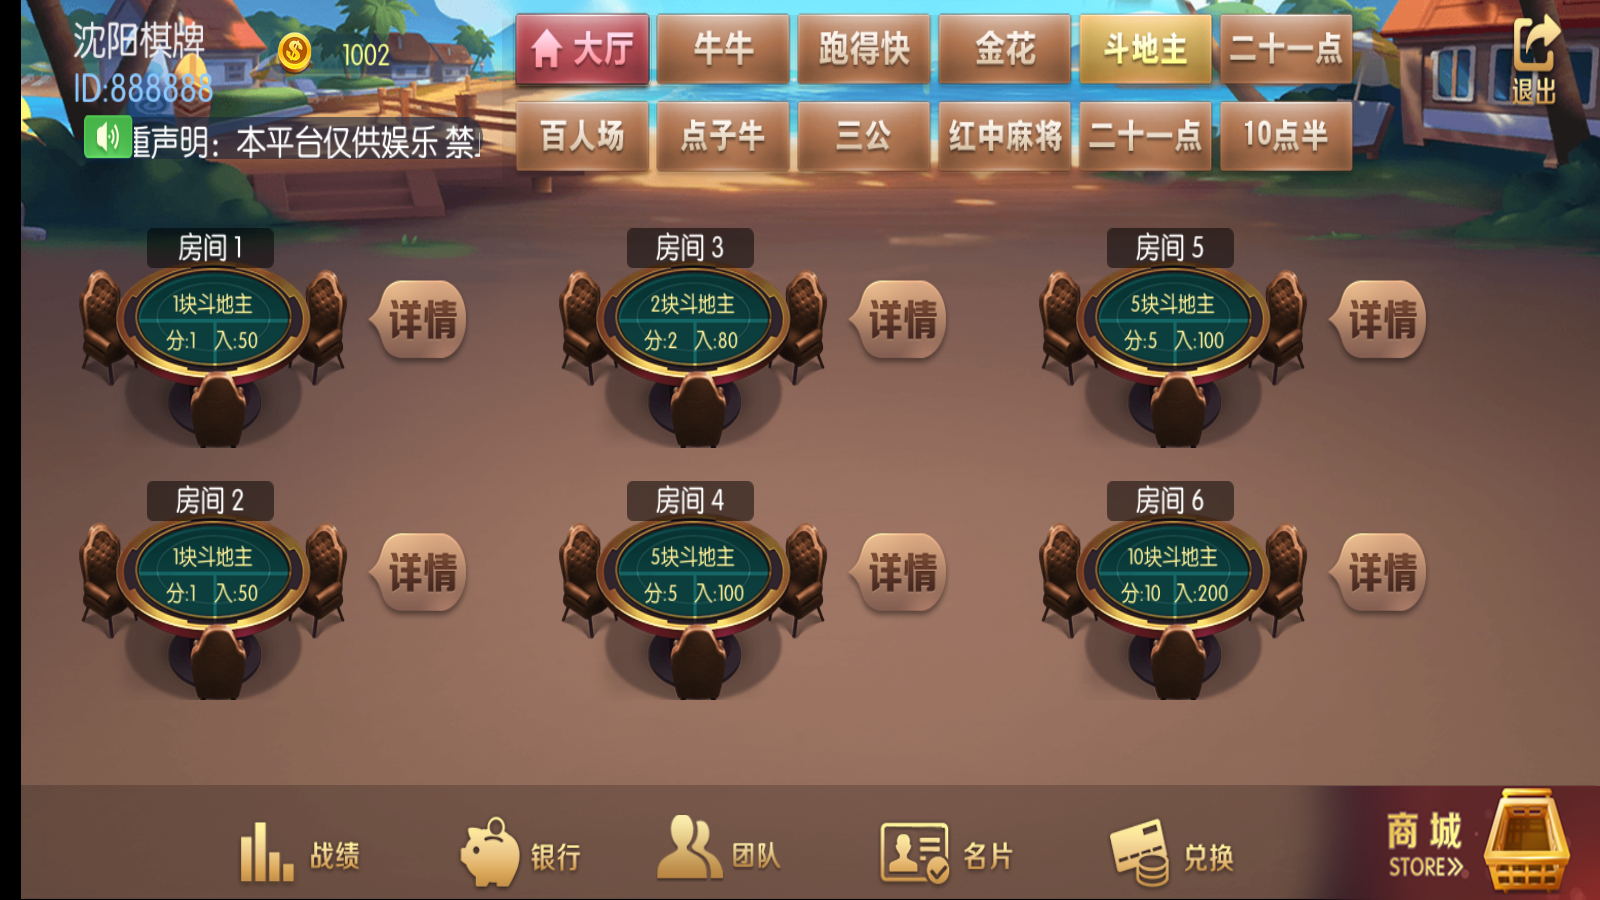 新版五游牛王+大联盟运营版棋牌组件 UI美观大方插图10